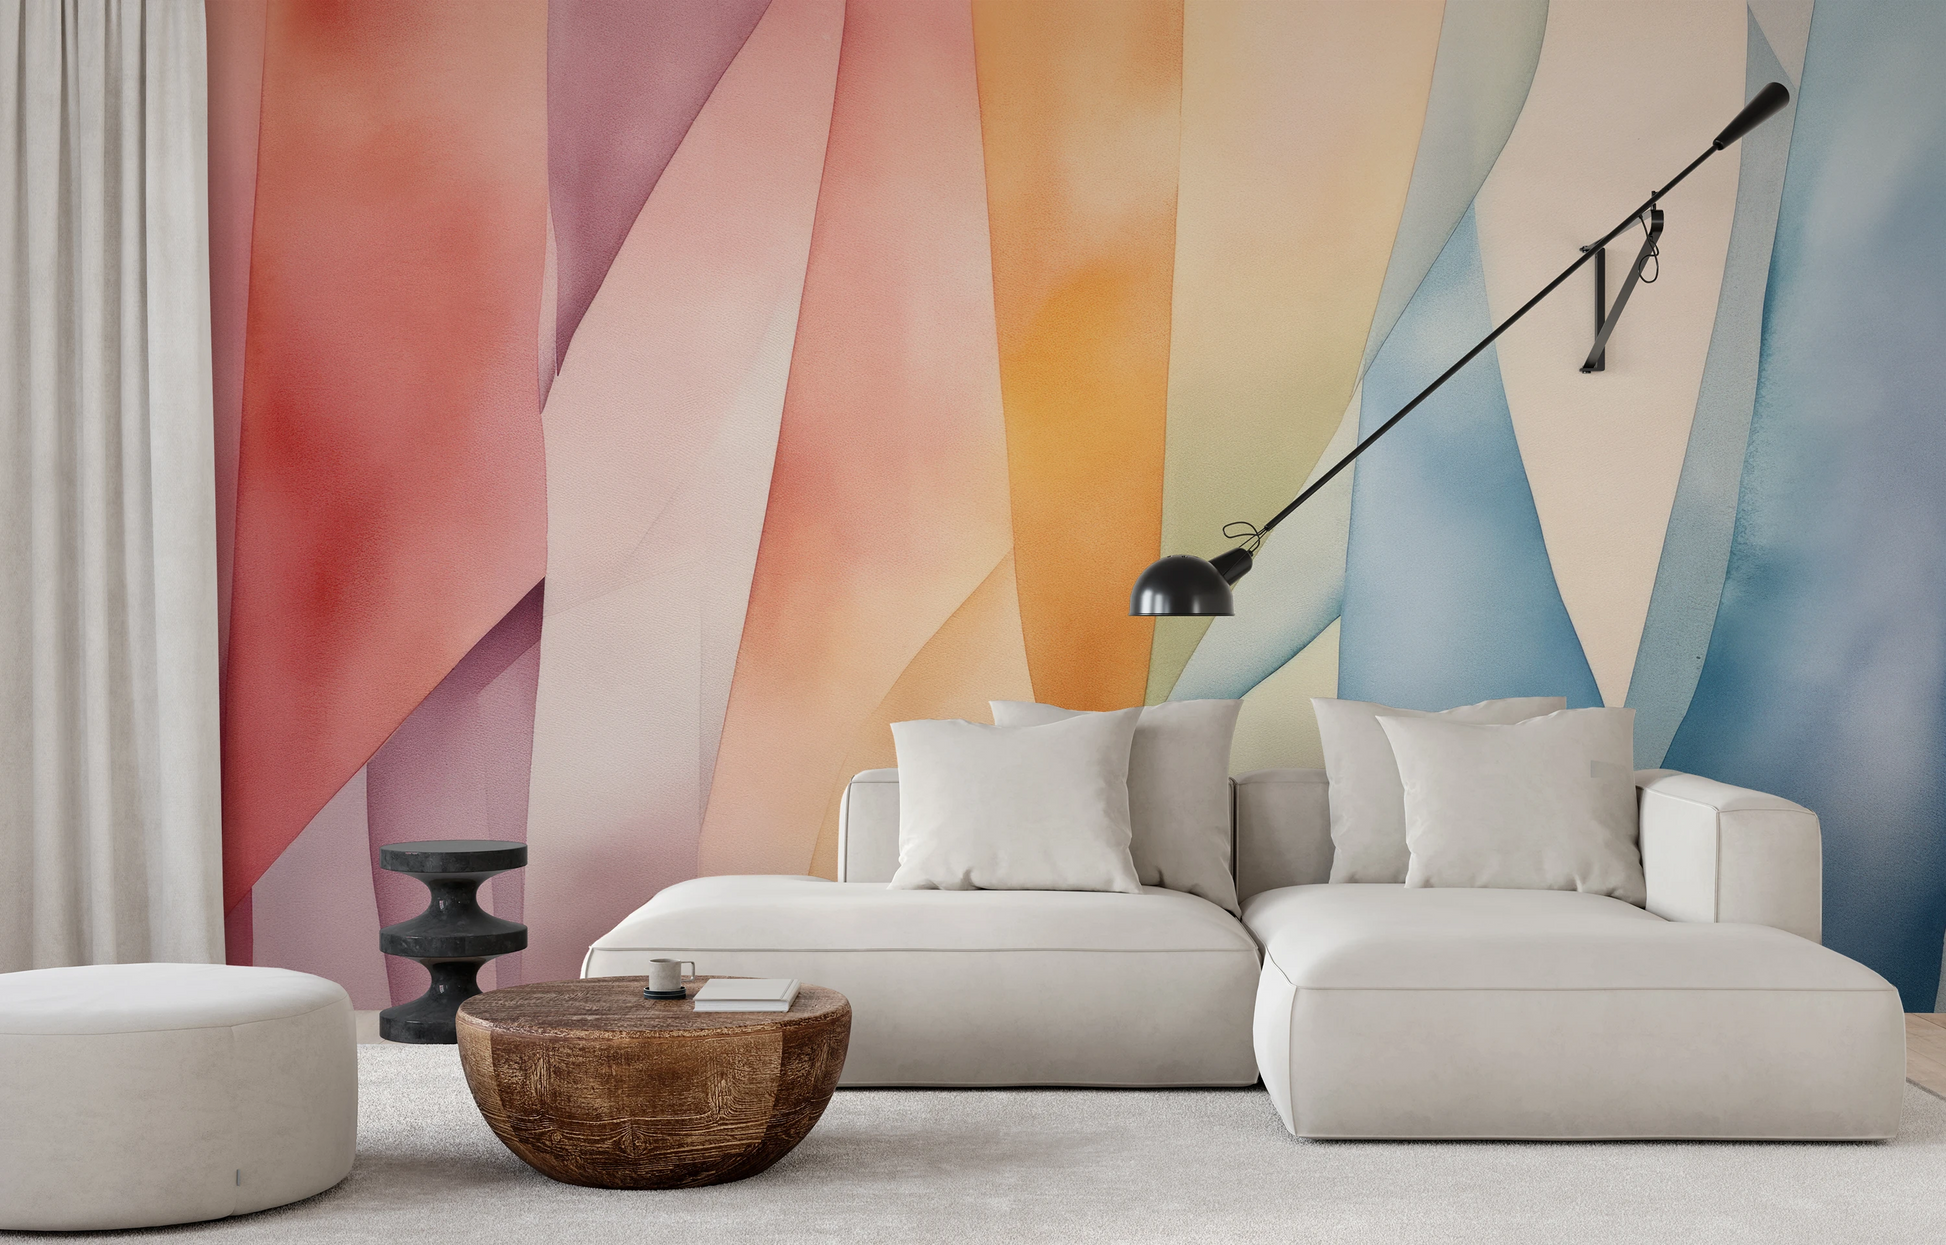 Fototapeta malowana o nazwie Pastel Whirl pokazana w aranżacji wnętrza.